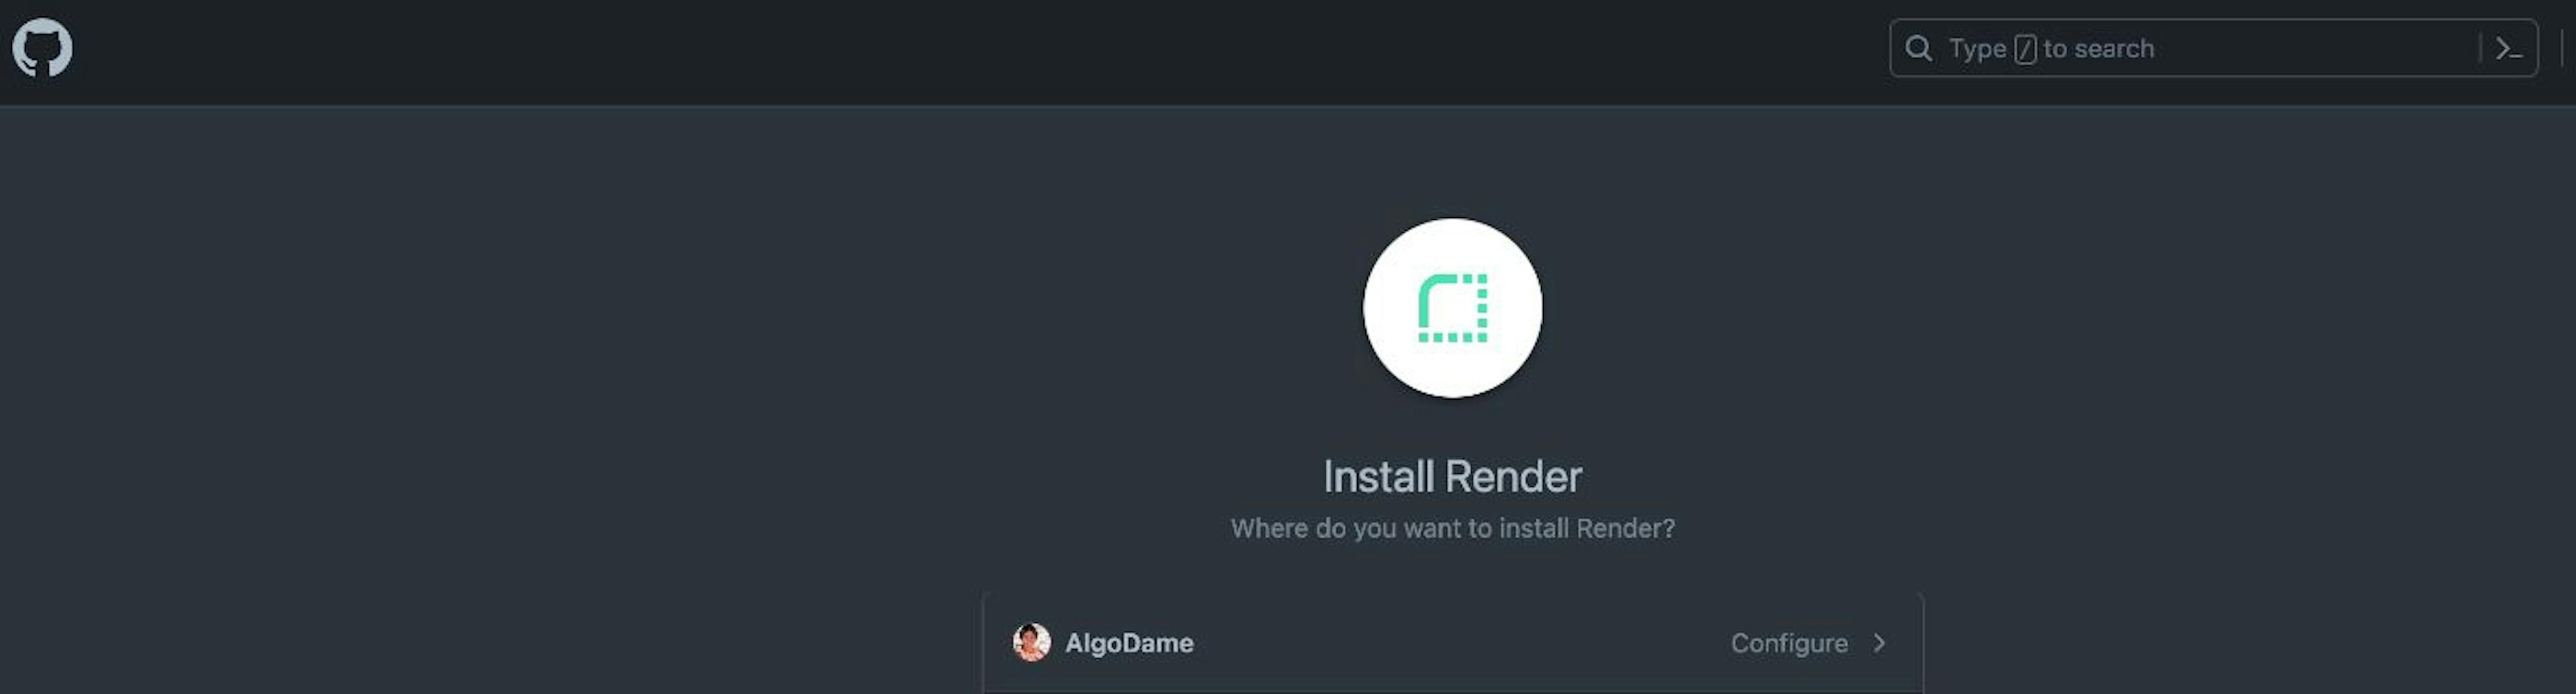 Installing Render on GitHub